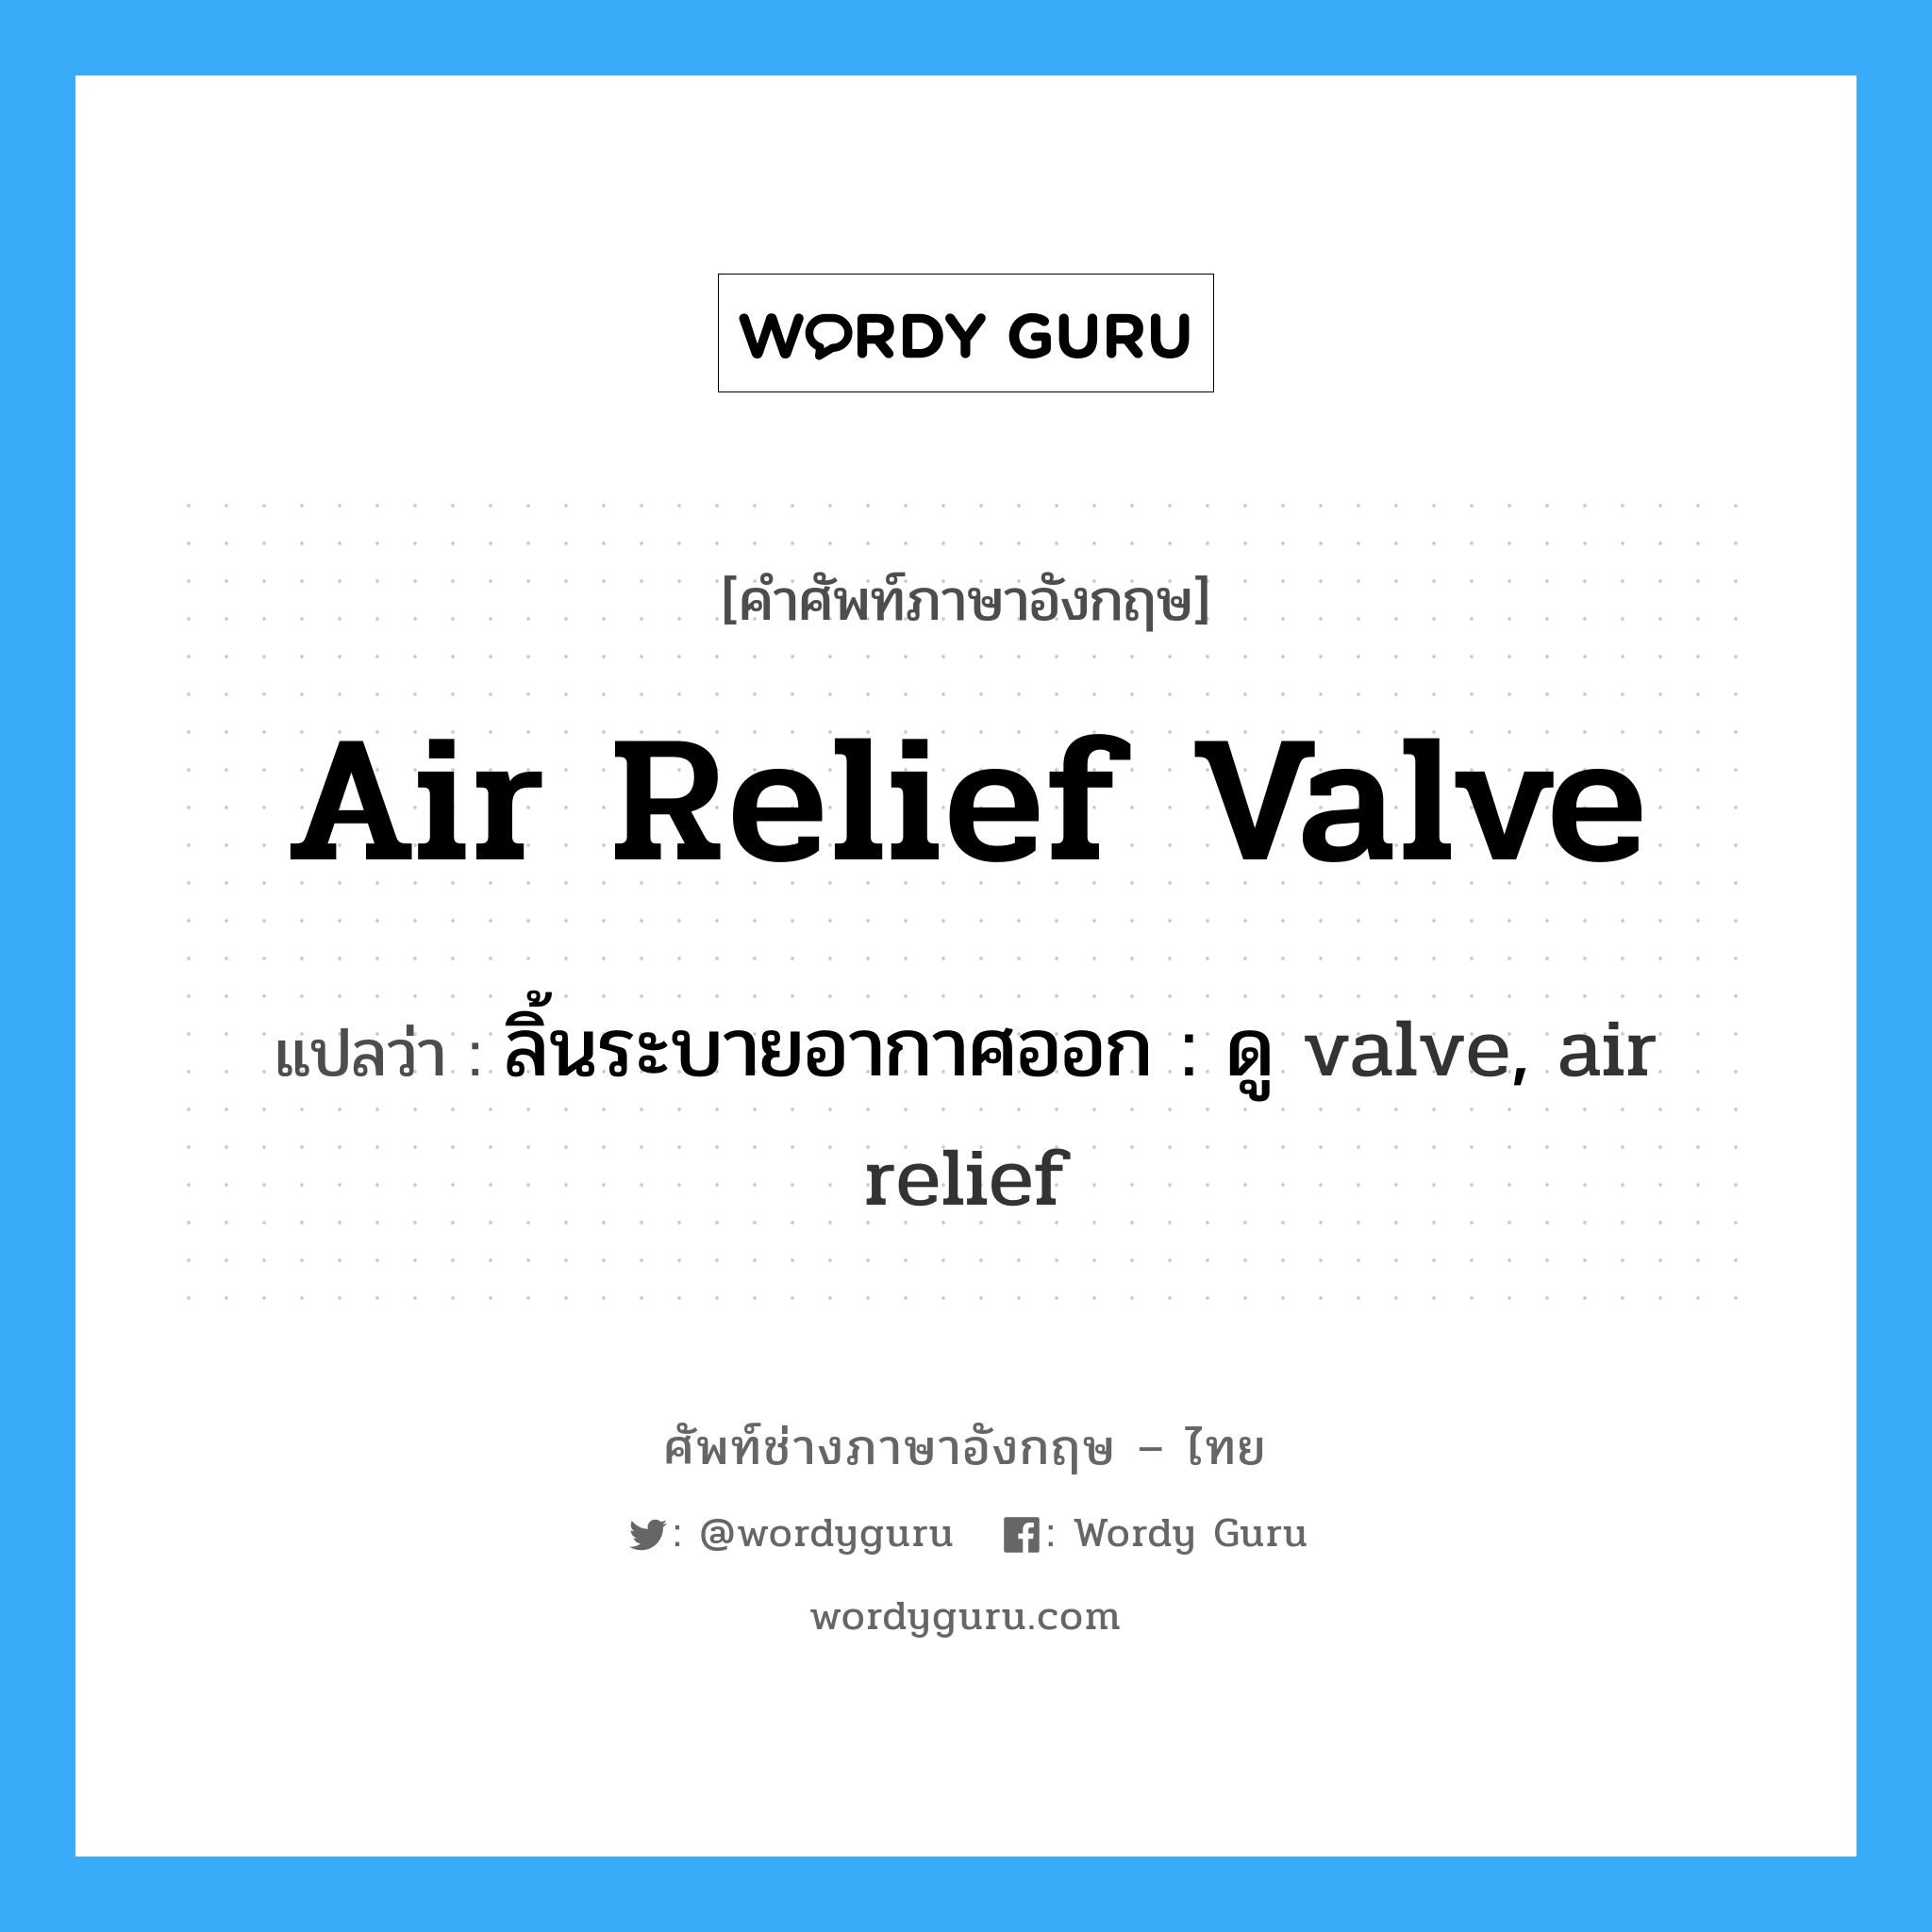 ลิ้นระบายอากาศออก : ดู valve, air relief ภาษาอังกฤษ?, คำศัพท์ช่างภาษาอังกฤษ - ไทย ลิ้นระบายอากาศออก : ดู valve, air relief คำศัพท์ภาษาอังกฤษ ลิ้นระบายอากาศออก : ดู valve, air relief แปลว่า air relief valve